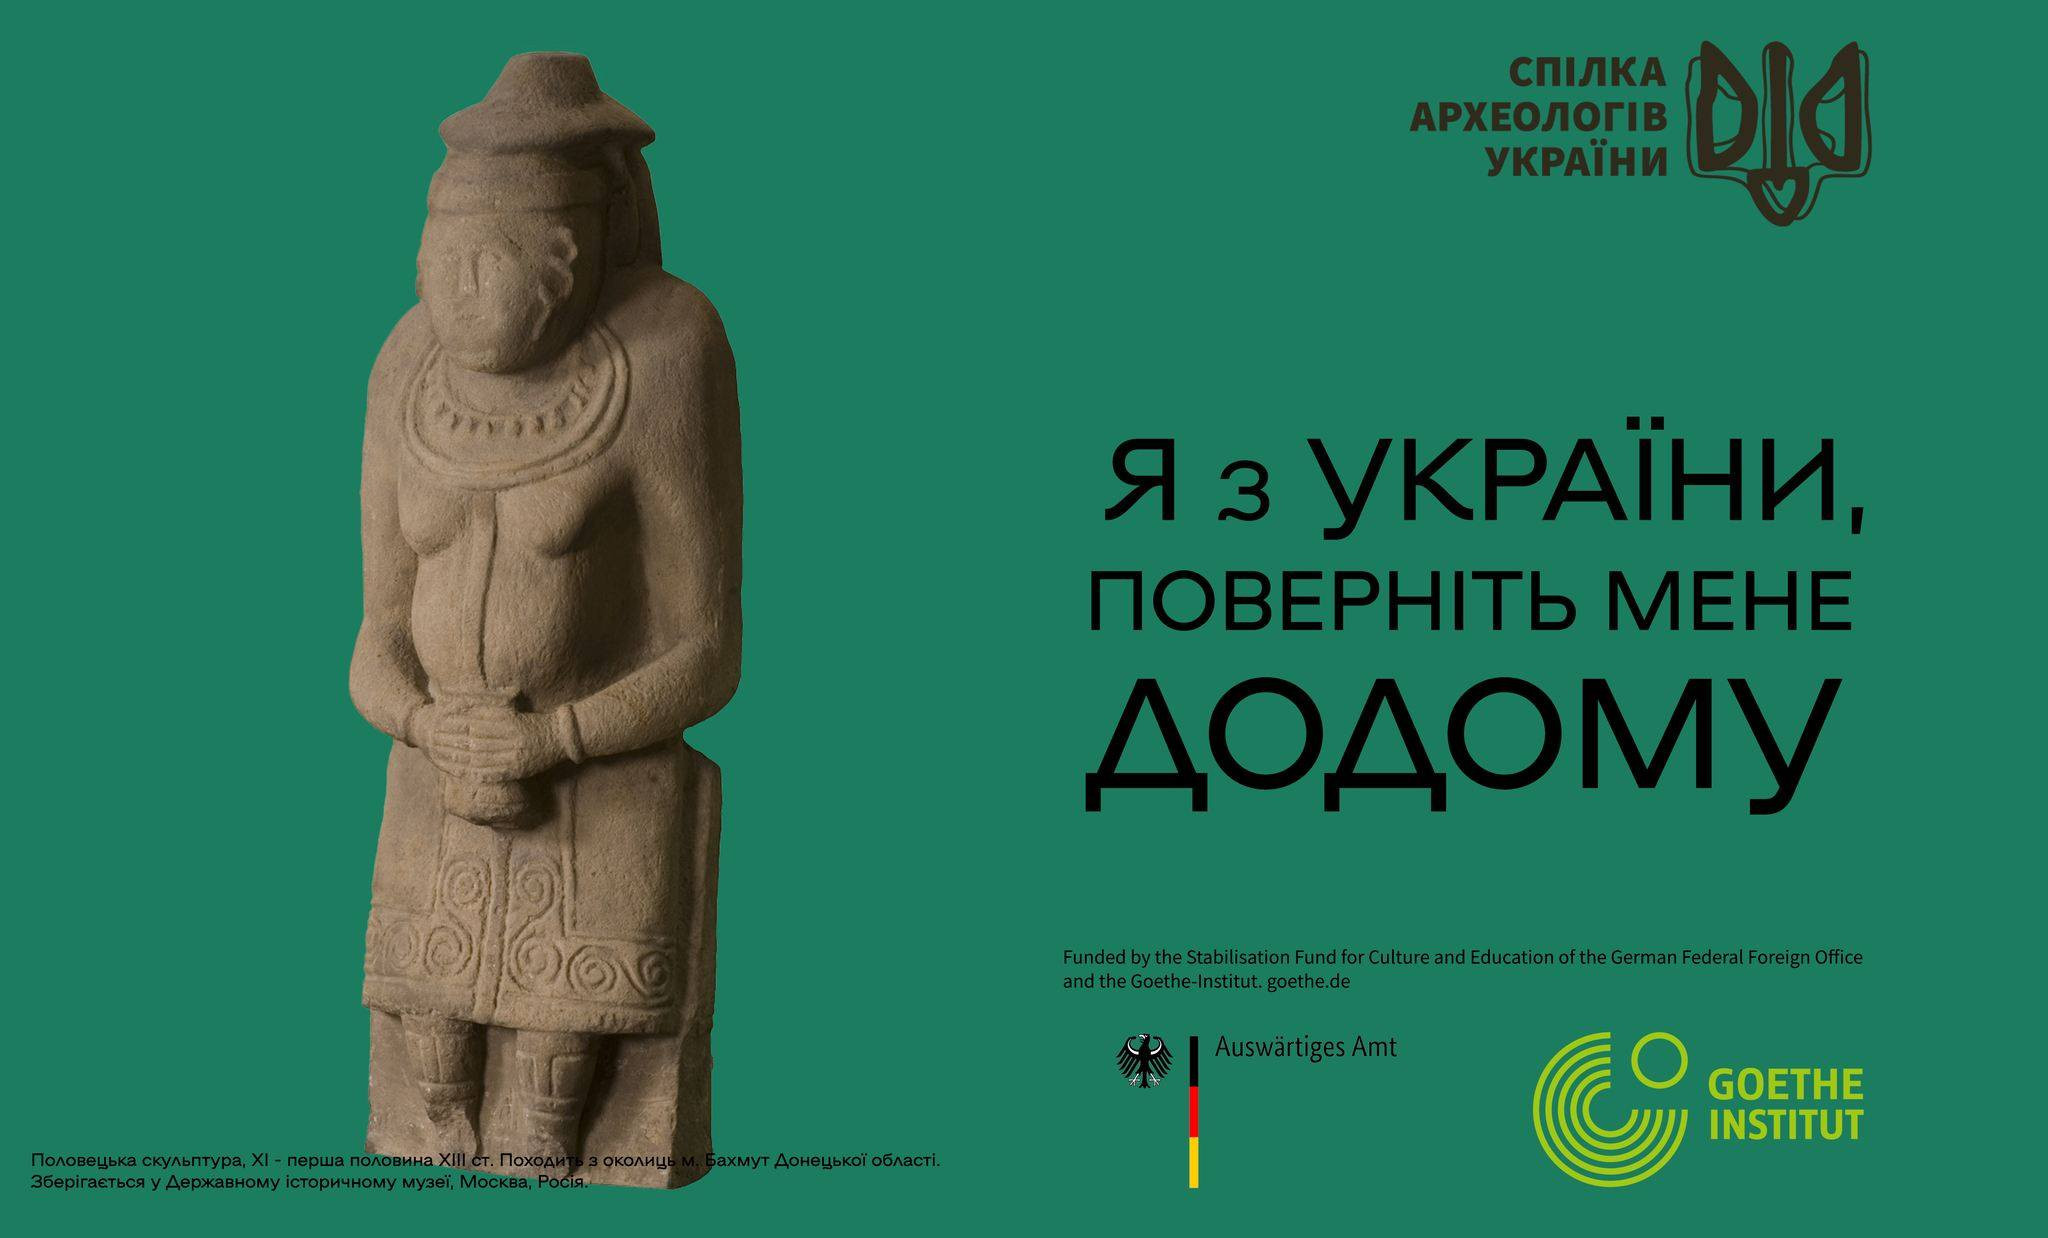 Археологічна спадщина, вкрадена Росією: інформаційно-просвітницька кампанія - зображення